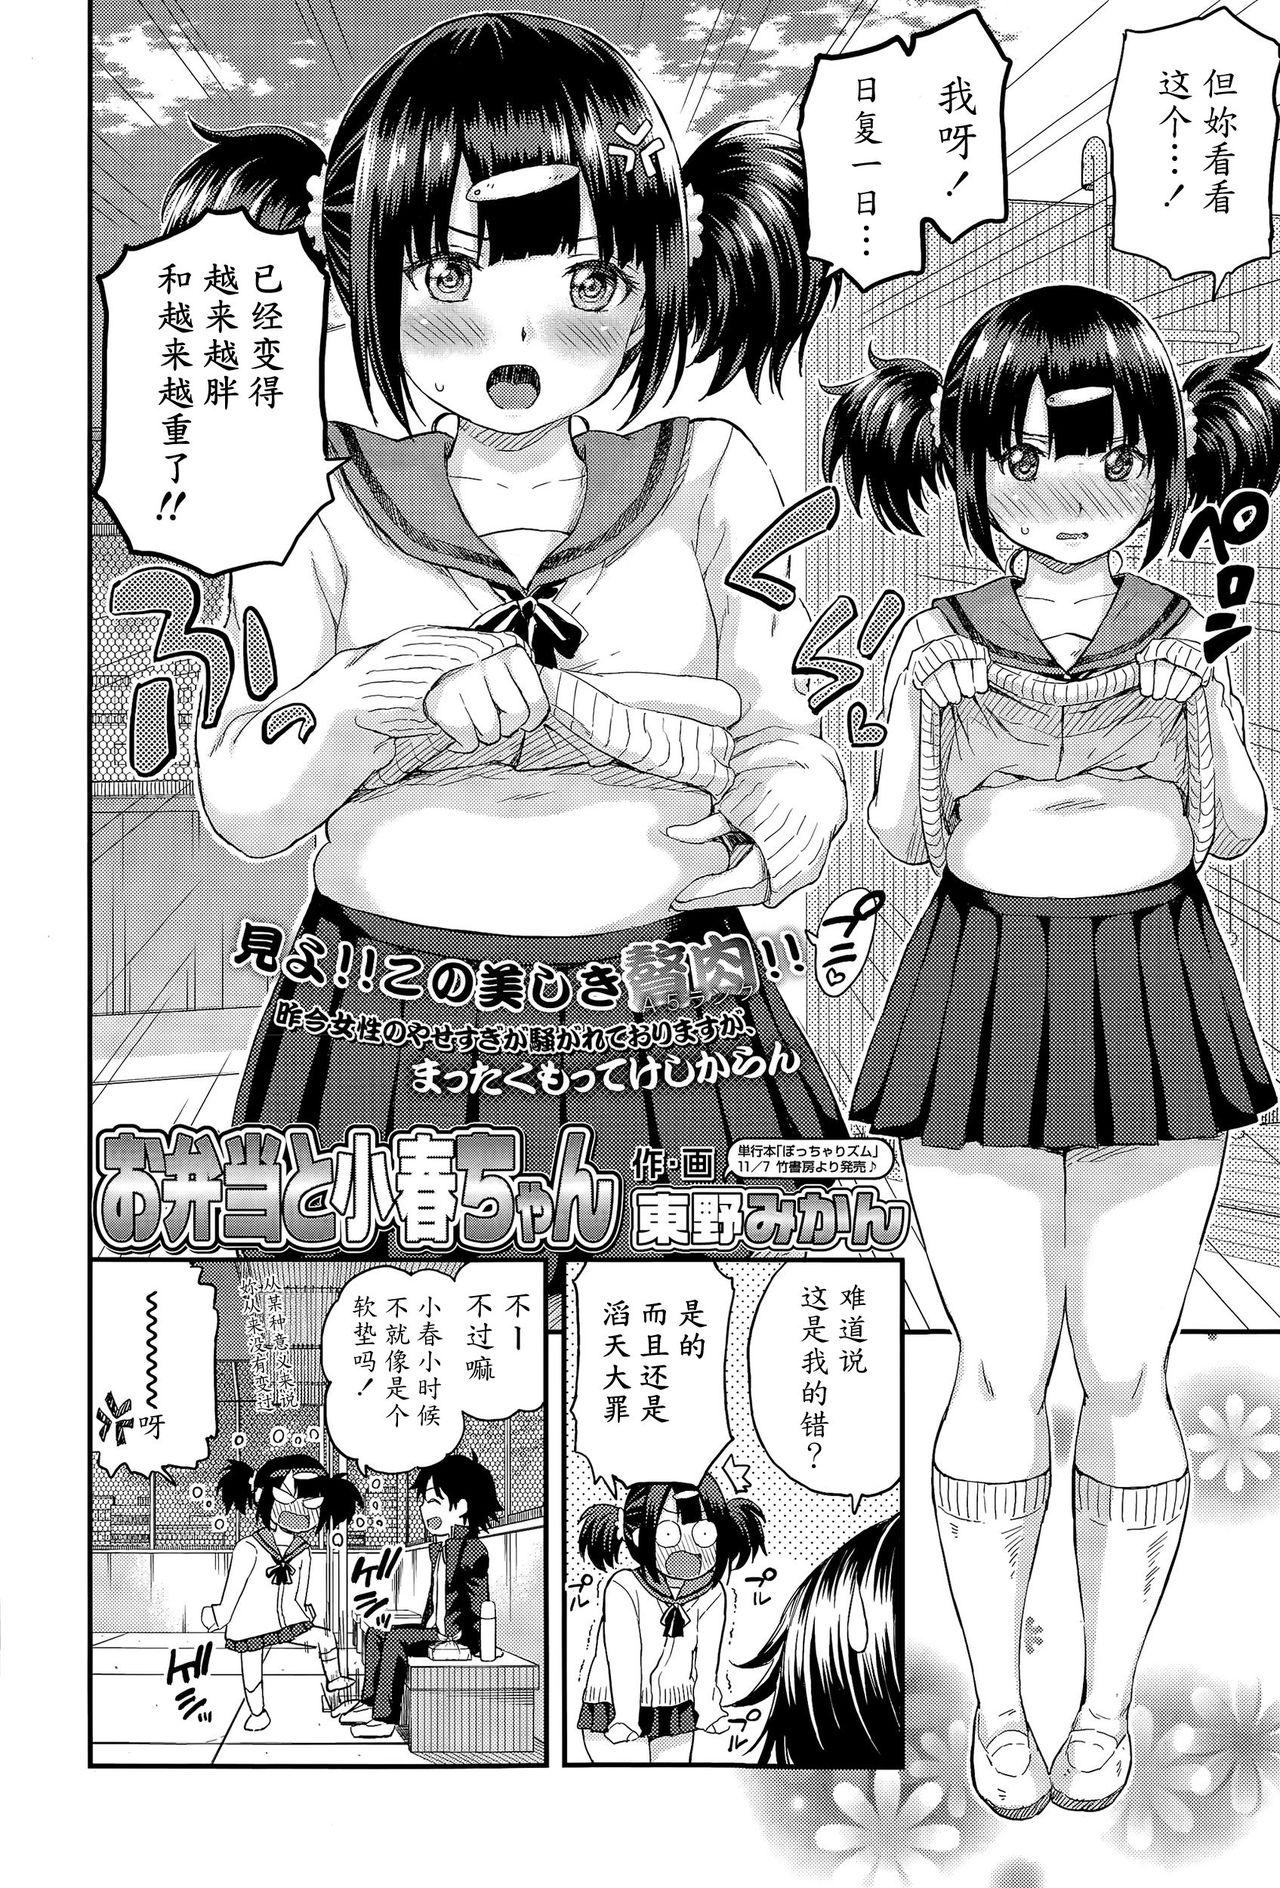 Zorra Obentou to Koharu-chan Enema - Page 2